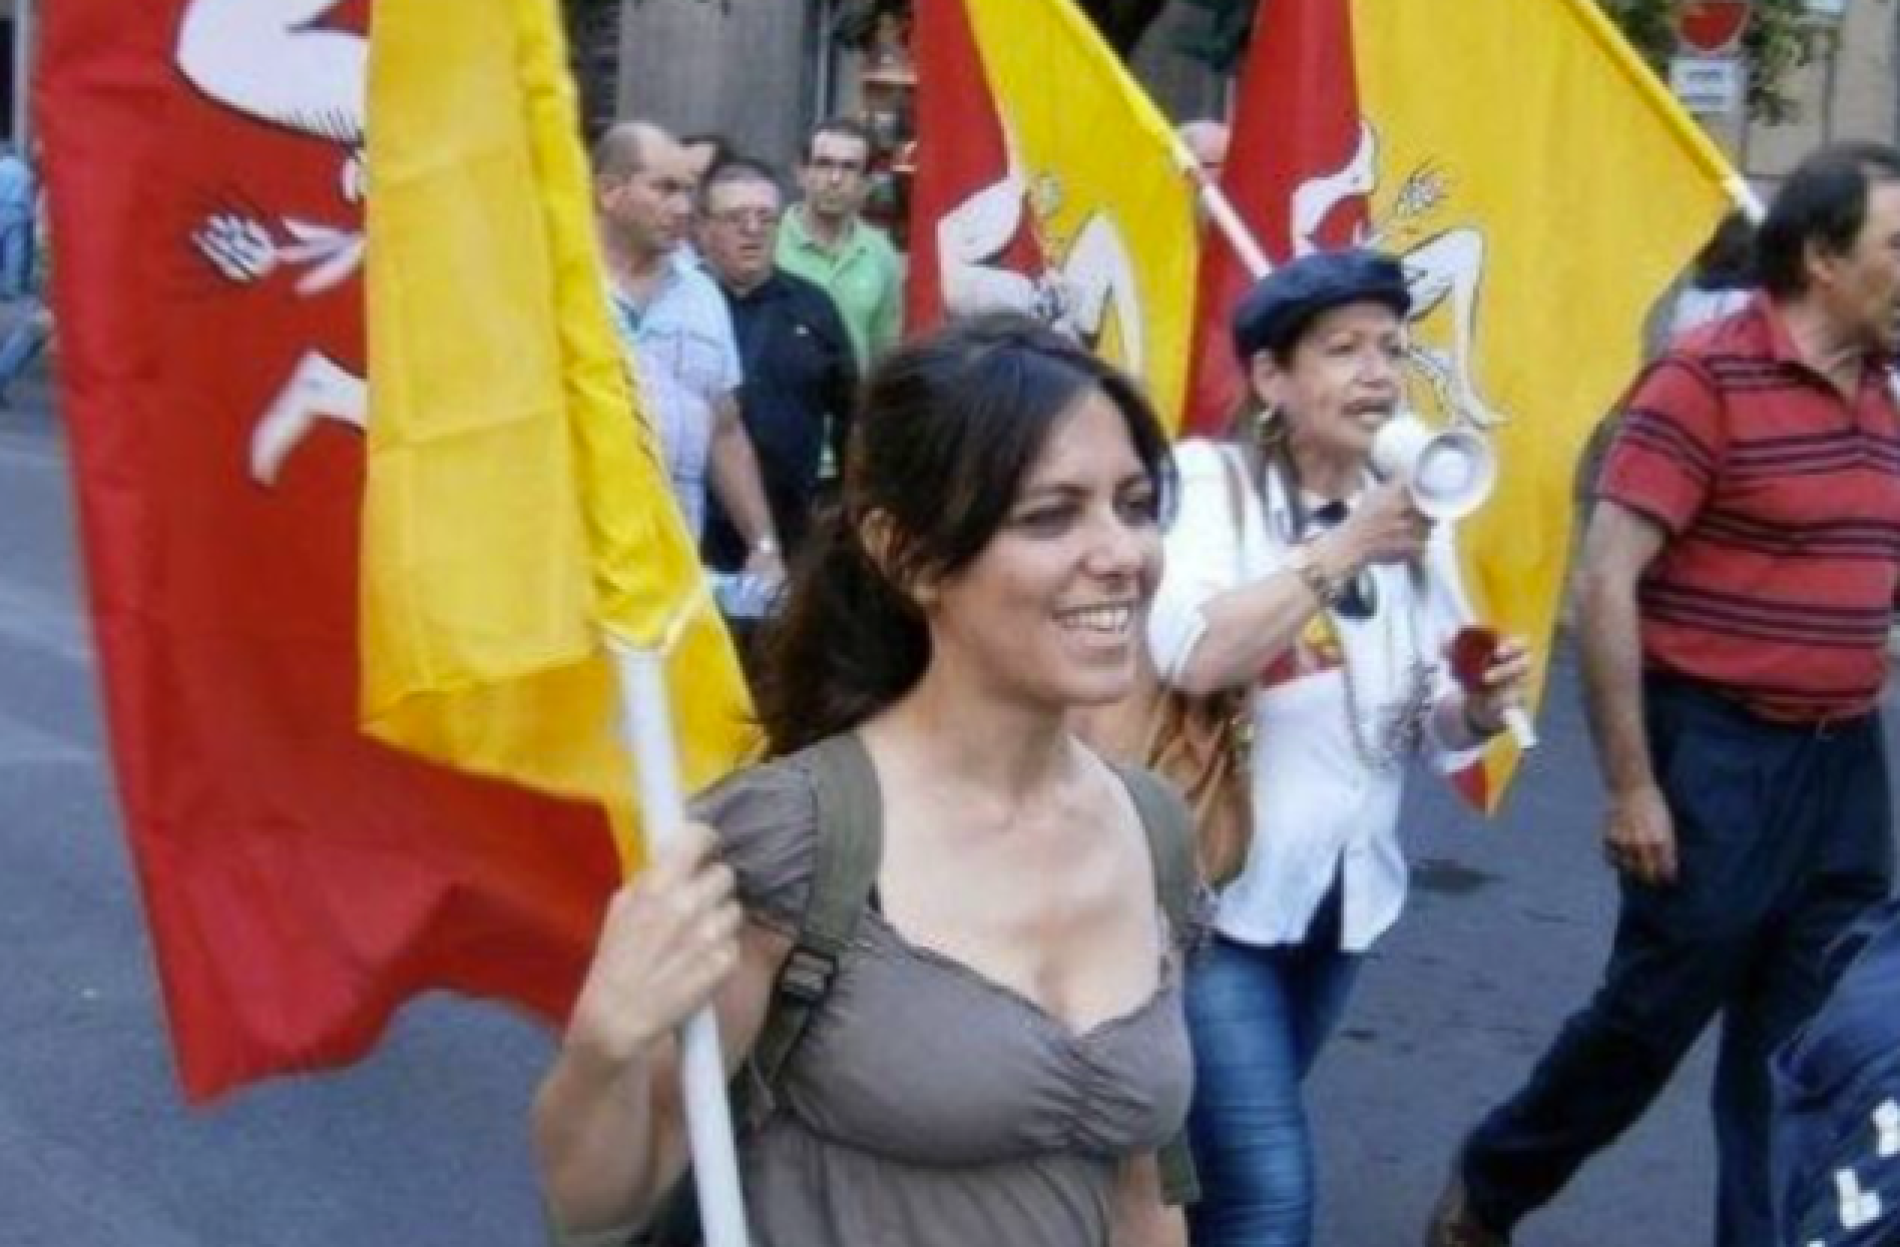 Eliana Esposito Candidata alla Presidenza della Regione Siciliana dopo le dimissioni di Musumeci